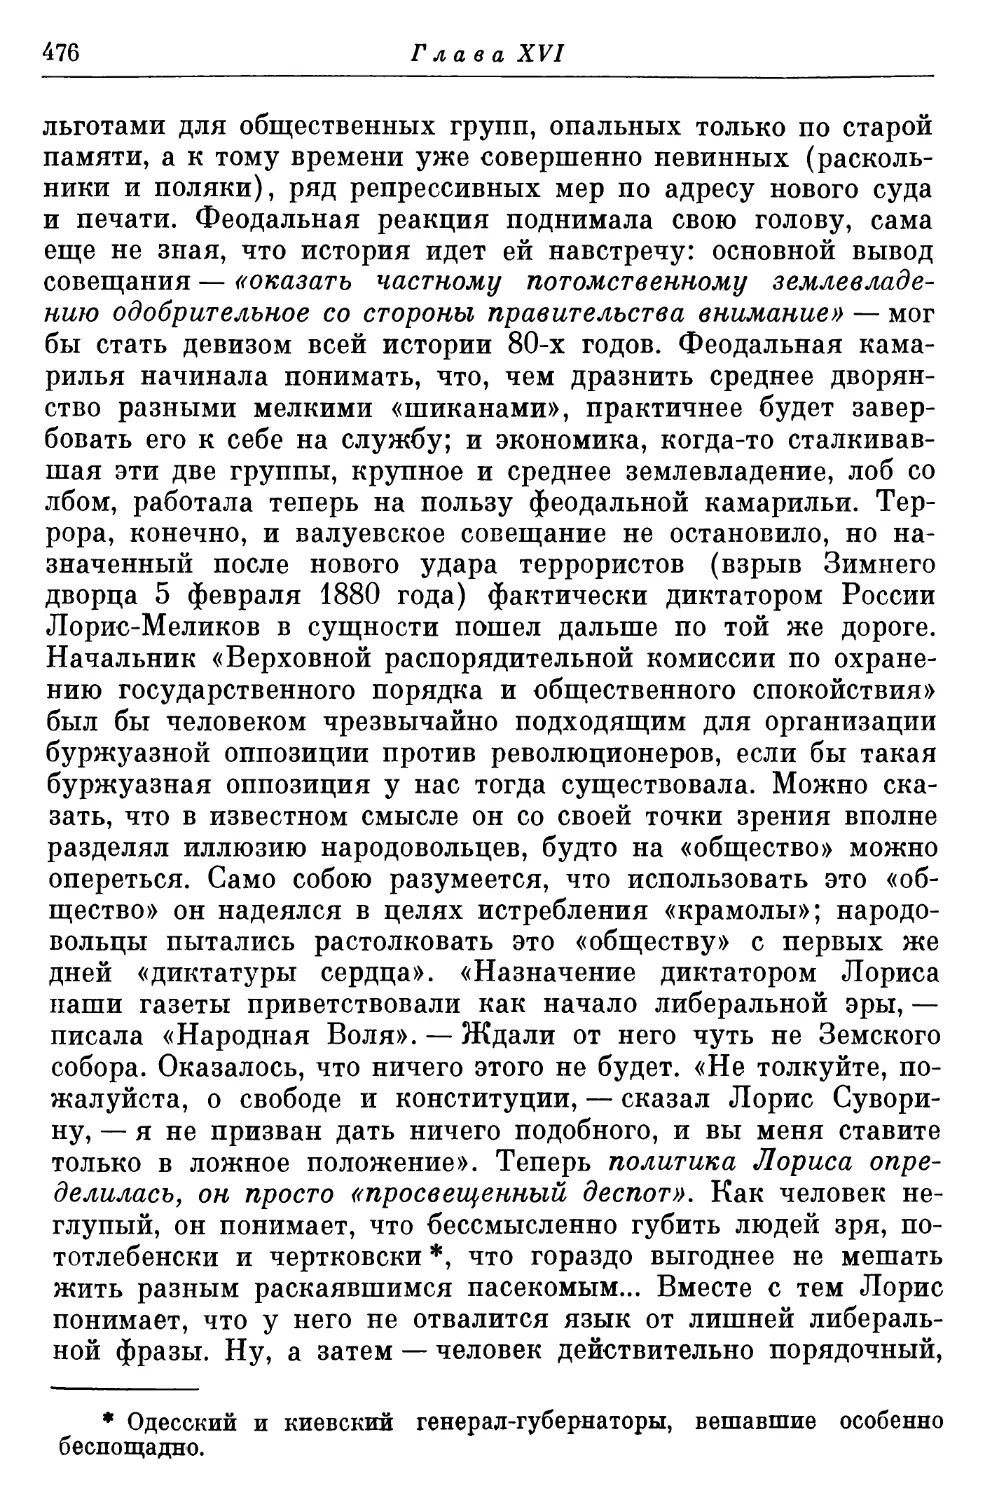 Политические мероприятия правительства; Лорис-Меликов и «диктатура сердца»; 1 марта 1881 года